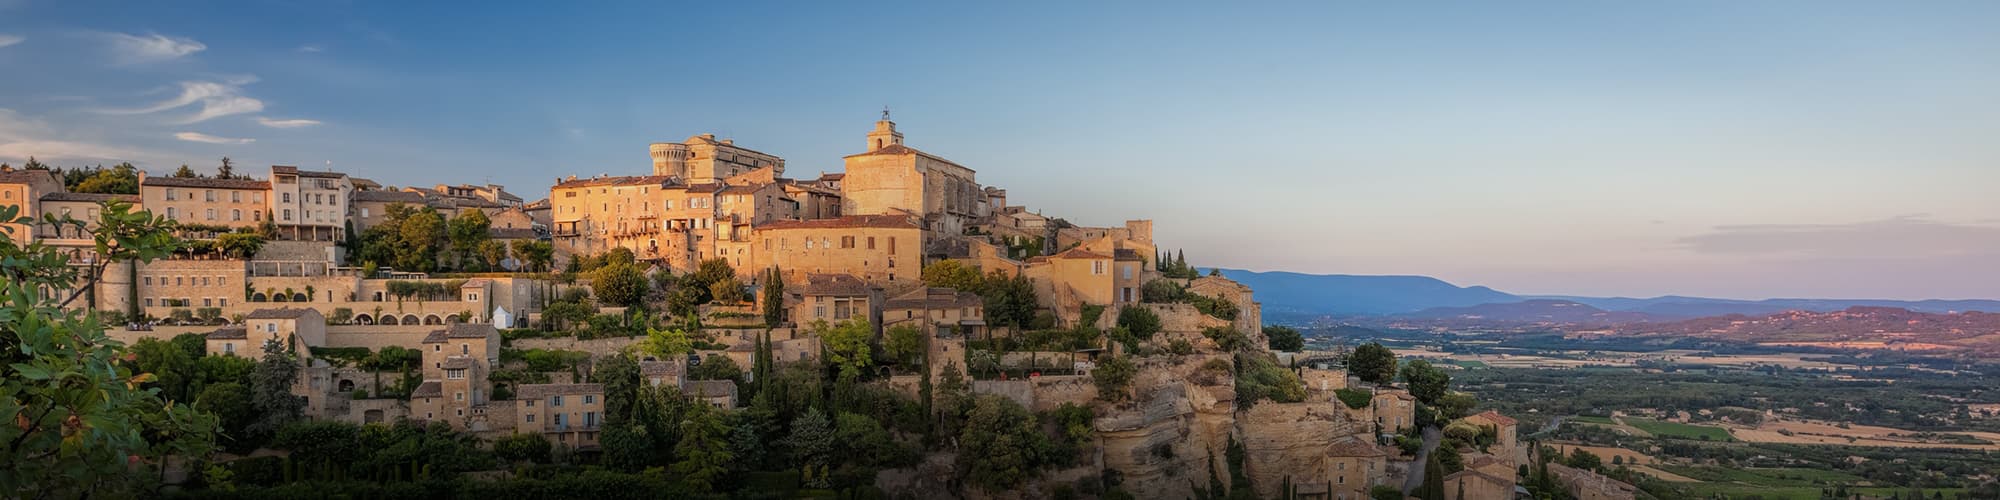 Voyages en liberté en Provence - Côte d'Azur